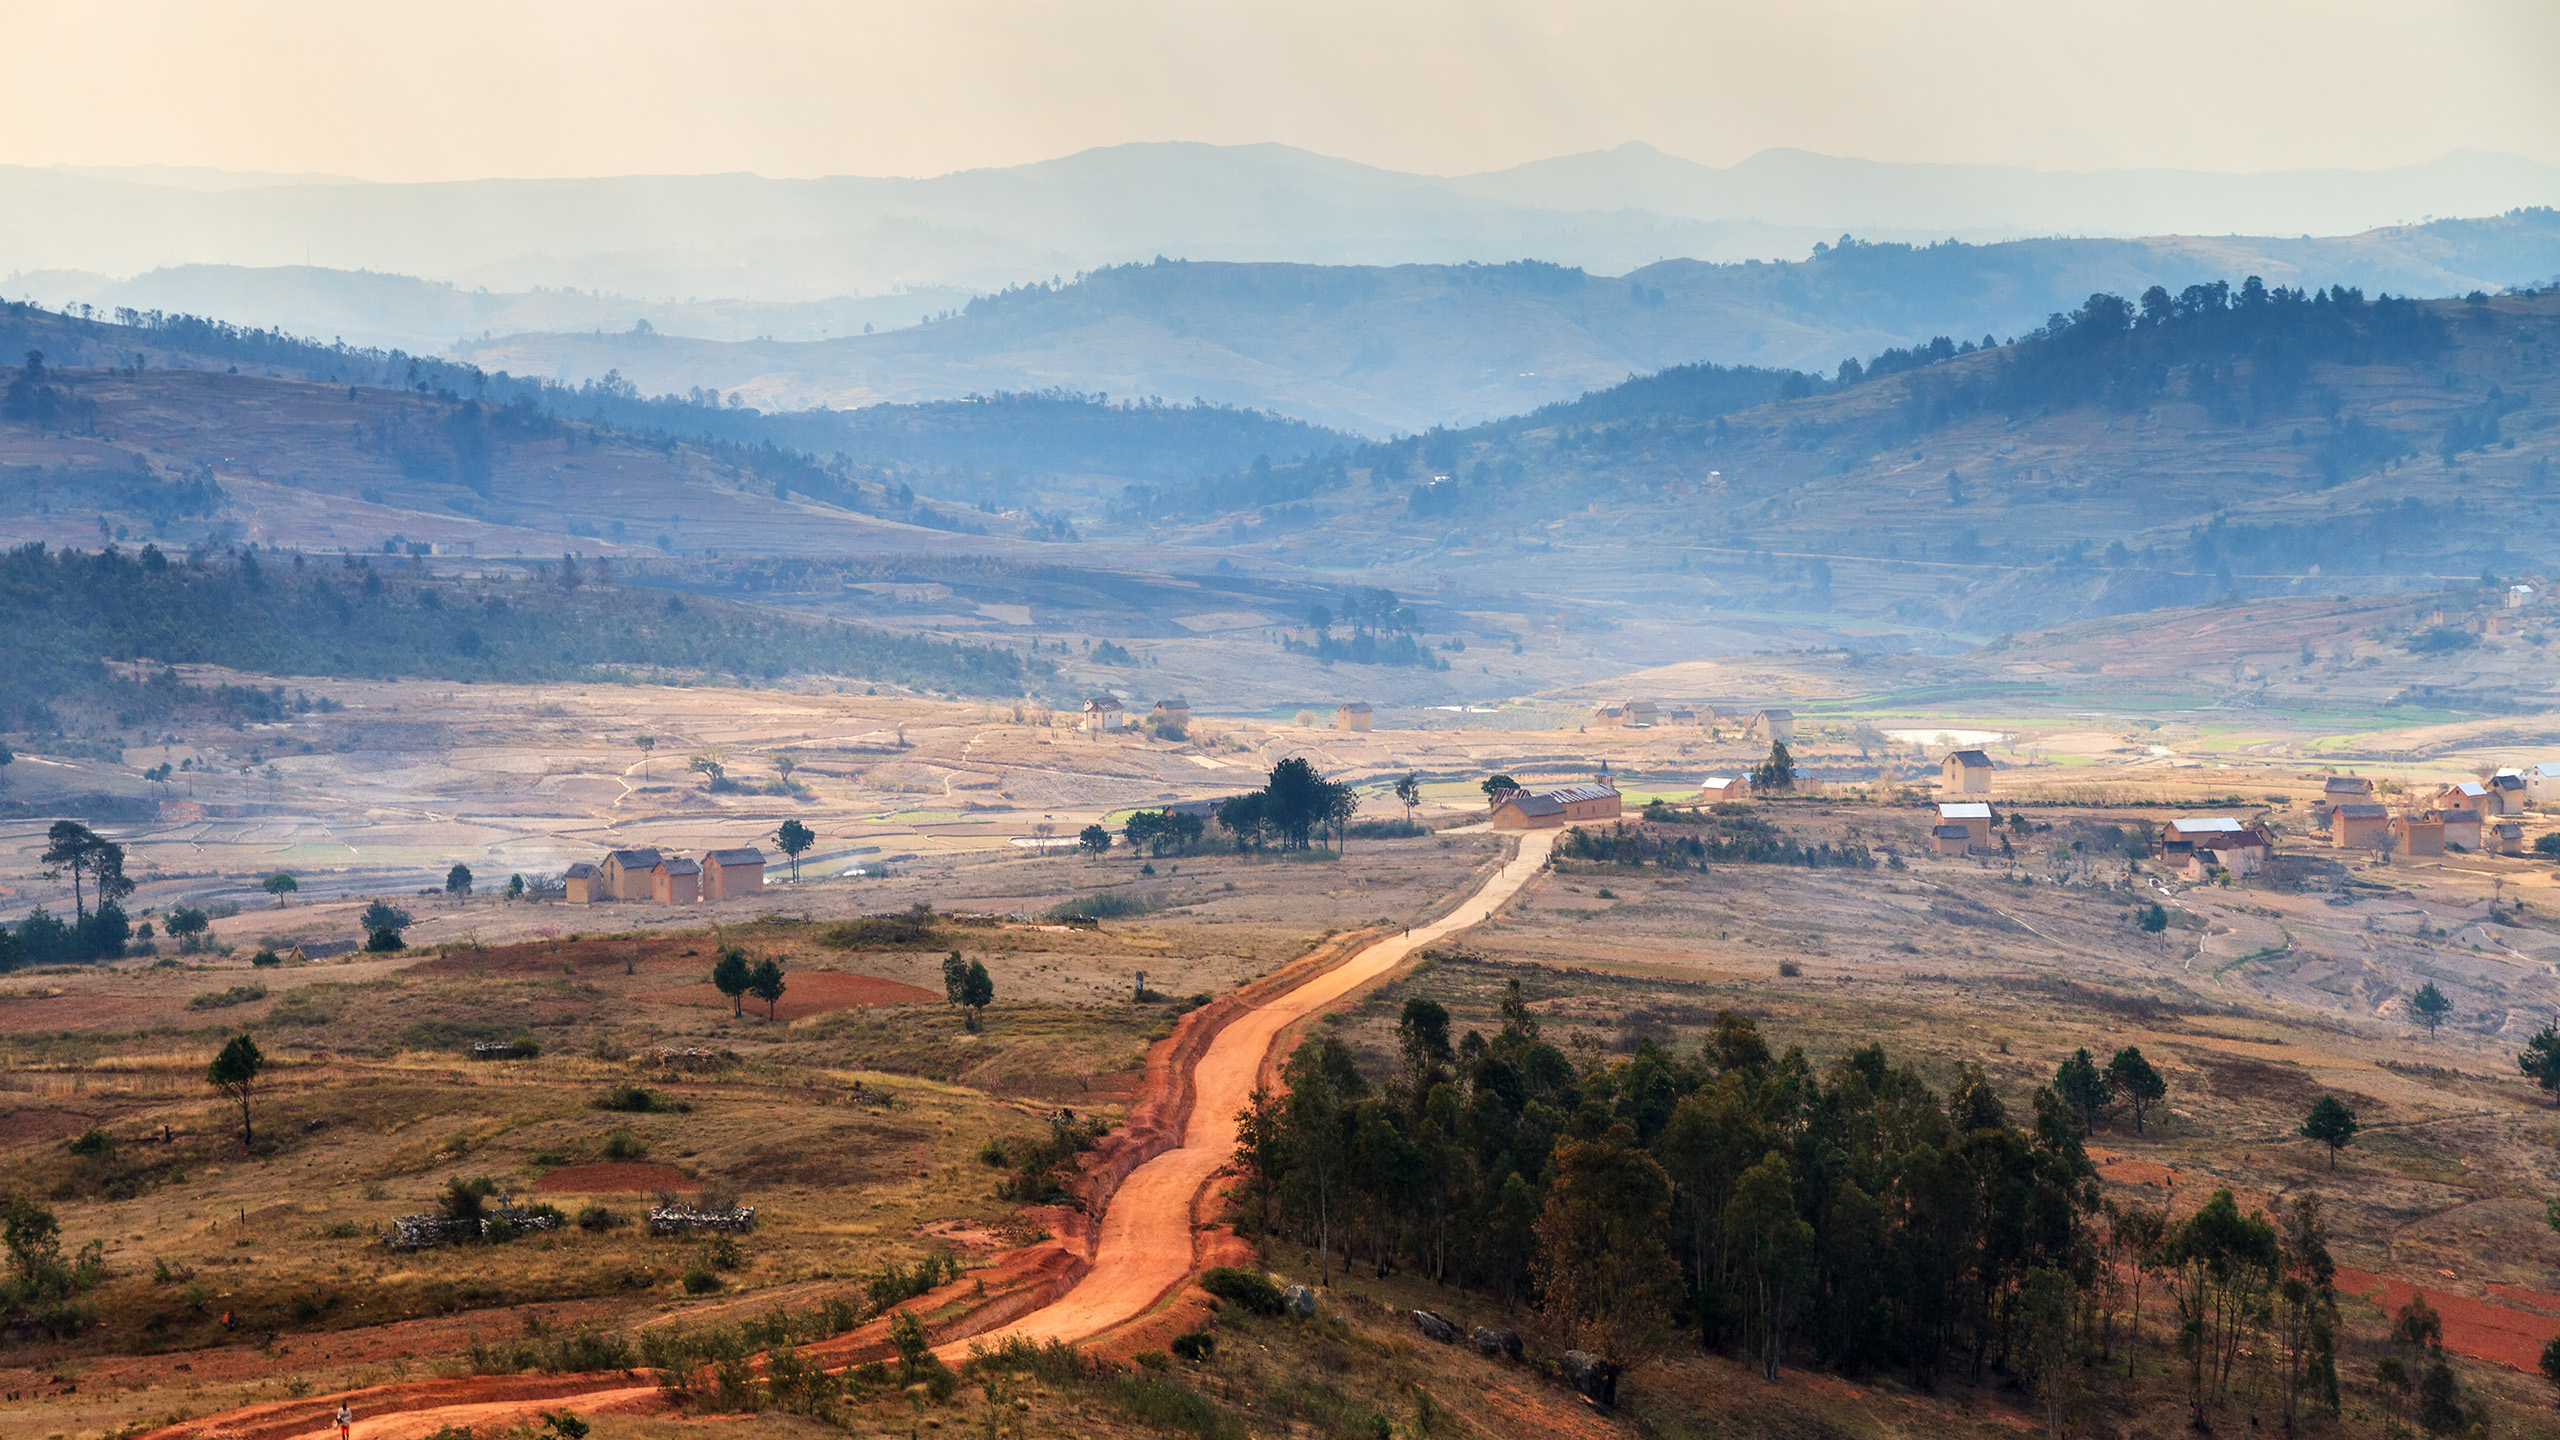 Über 90 % der ursprünglichen Waldflächen Madagaskars sind bereits vernichtet. | Dennis van de Water/Shutterstock